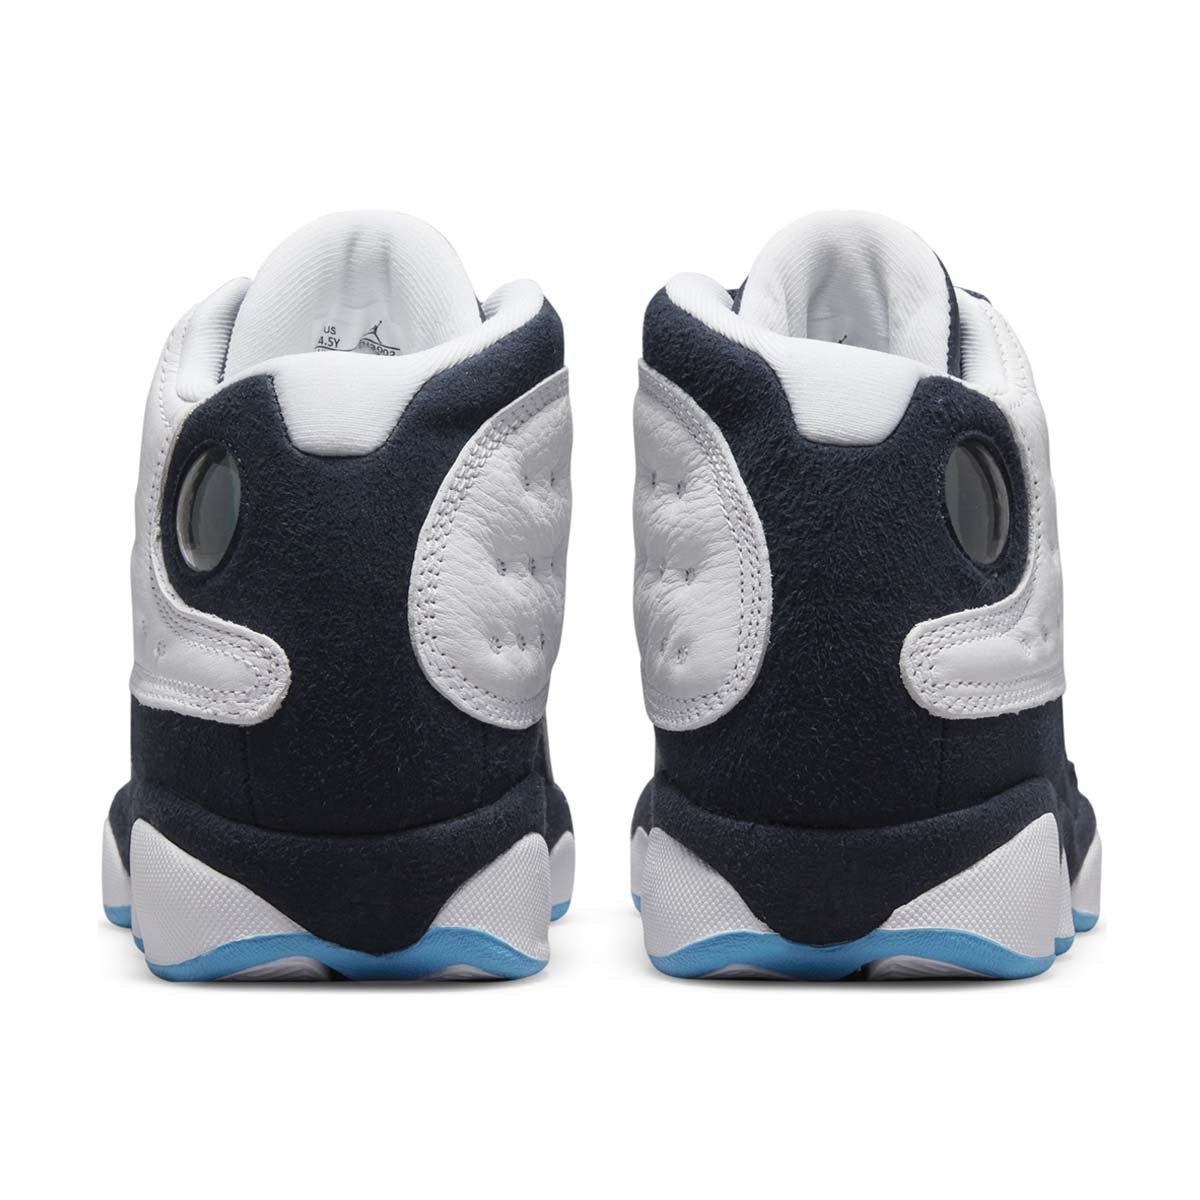 Air Jordan 13 Retro Big Kids' Shoes.